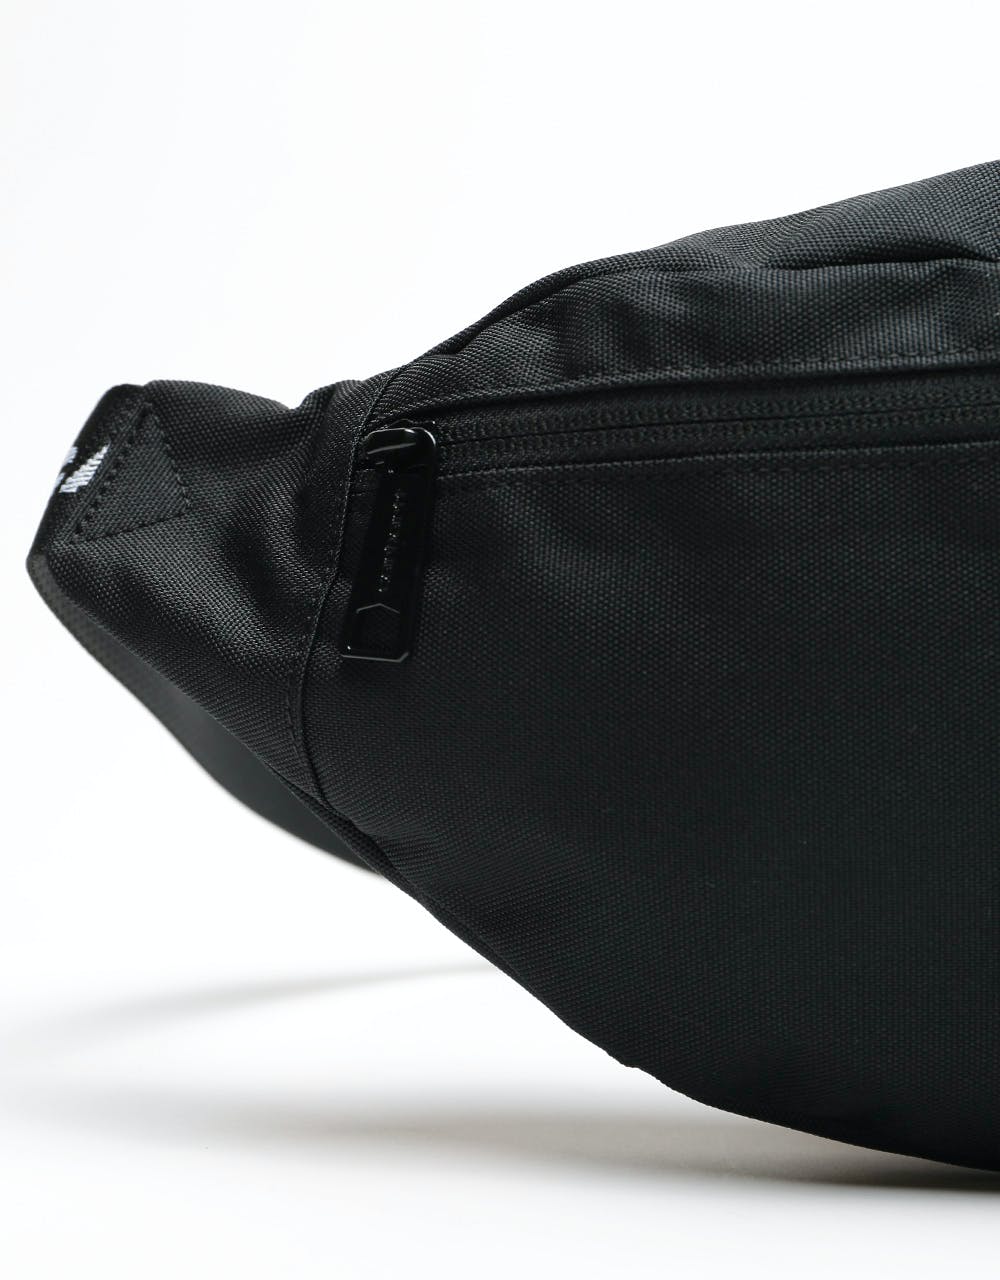 Carhartt WIP Brandon Cross Body Bag - Black